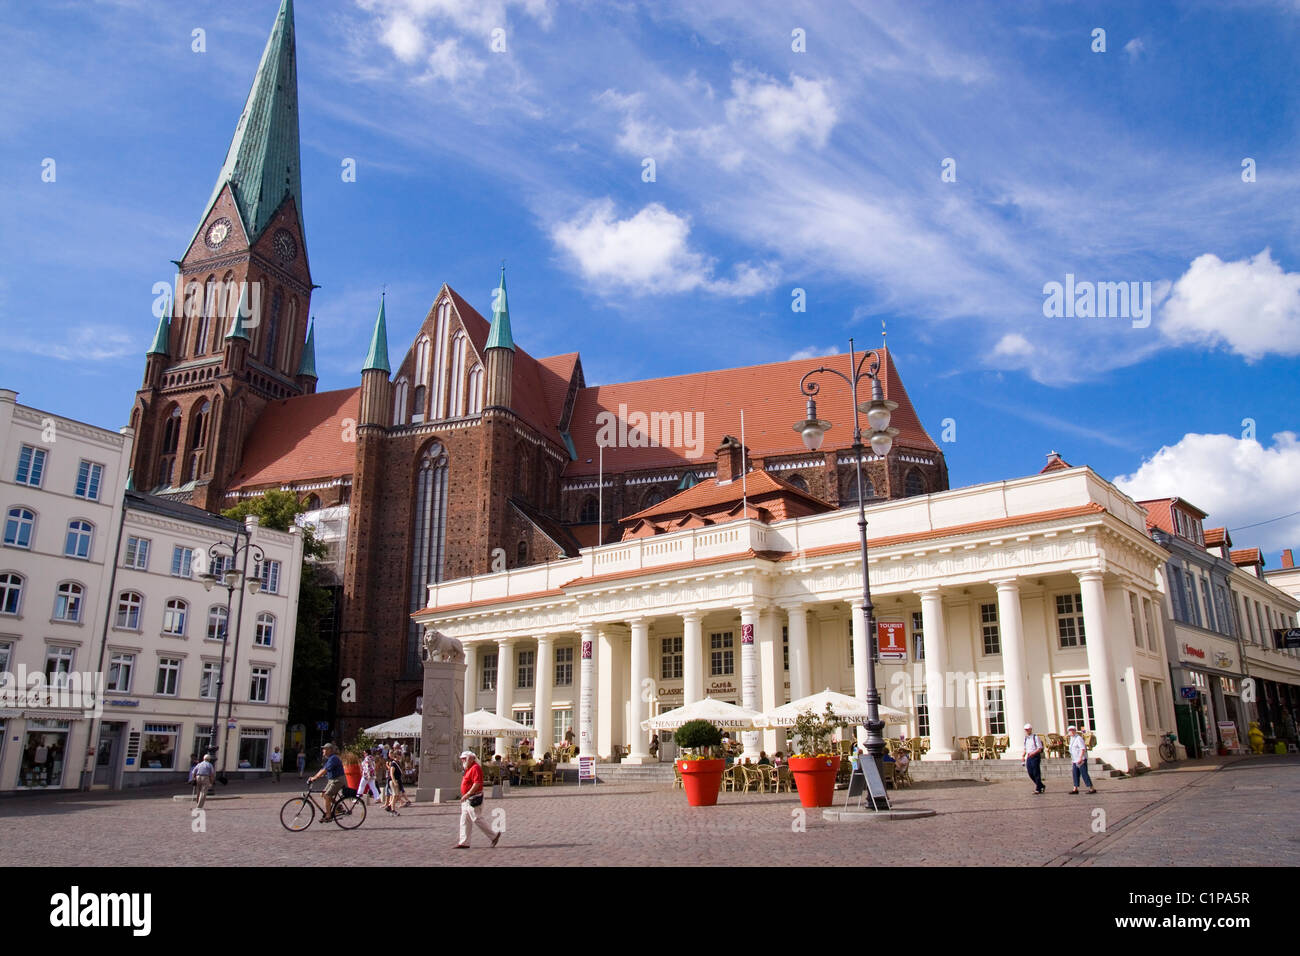 Alemania, Schwerin, Neue Gebaude, catedral y con vistas a la plaza del Ayuntamiento Foto de stock